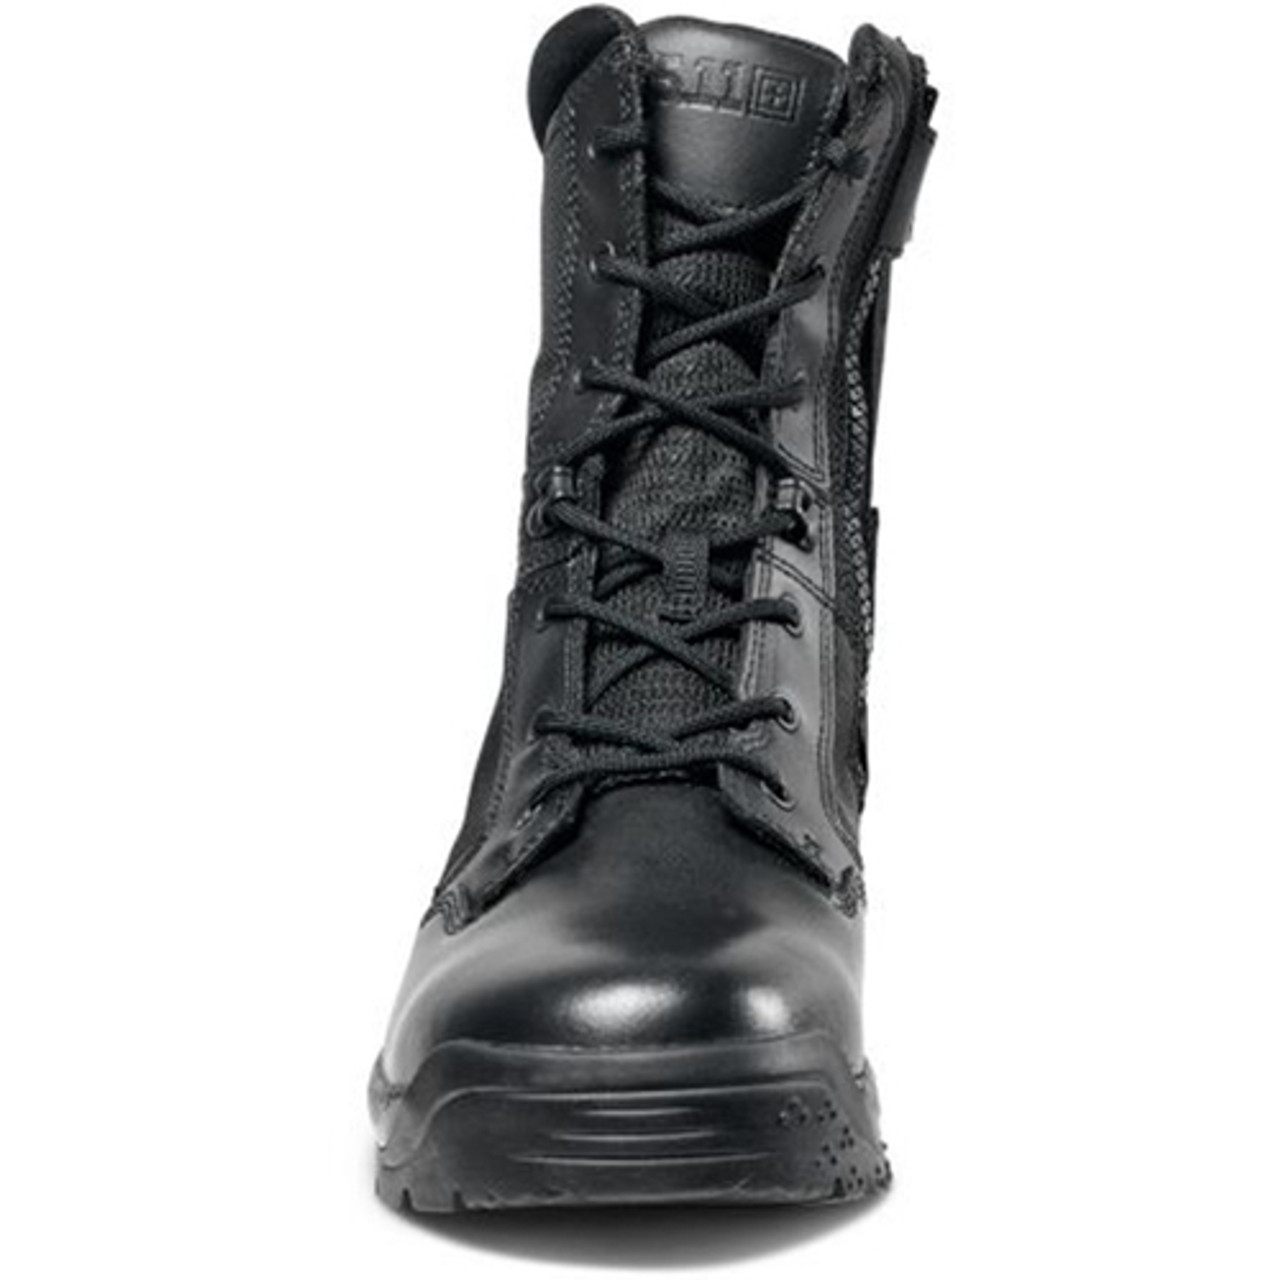 511 zipper boots